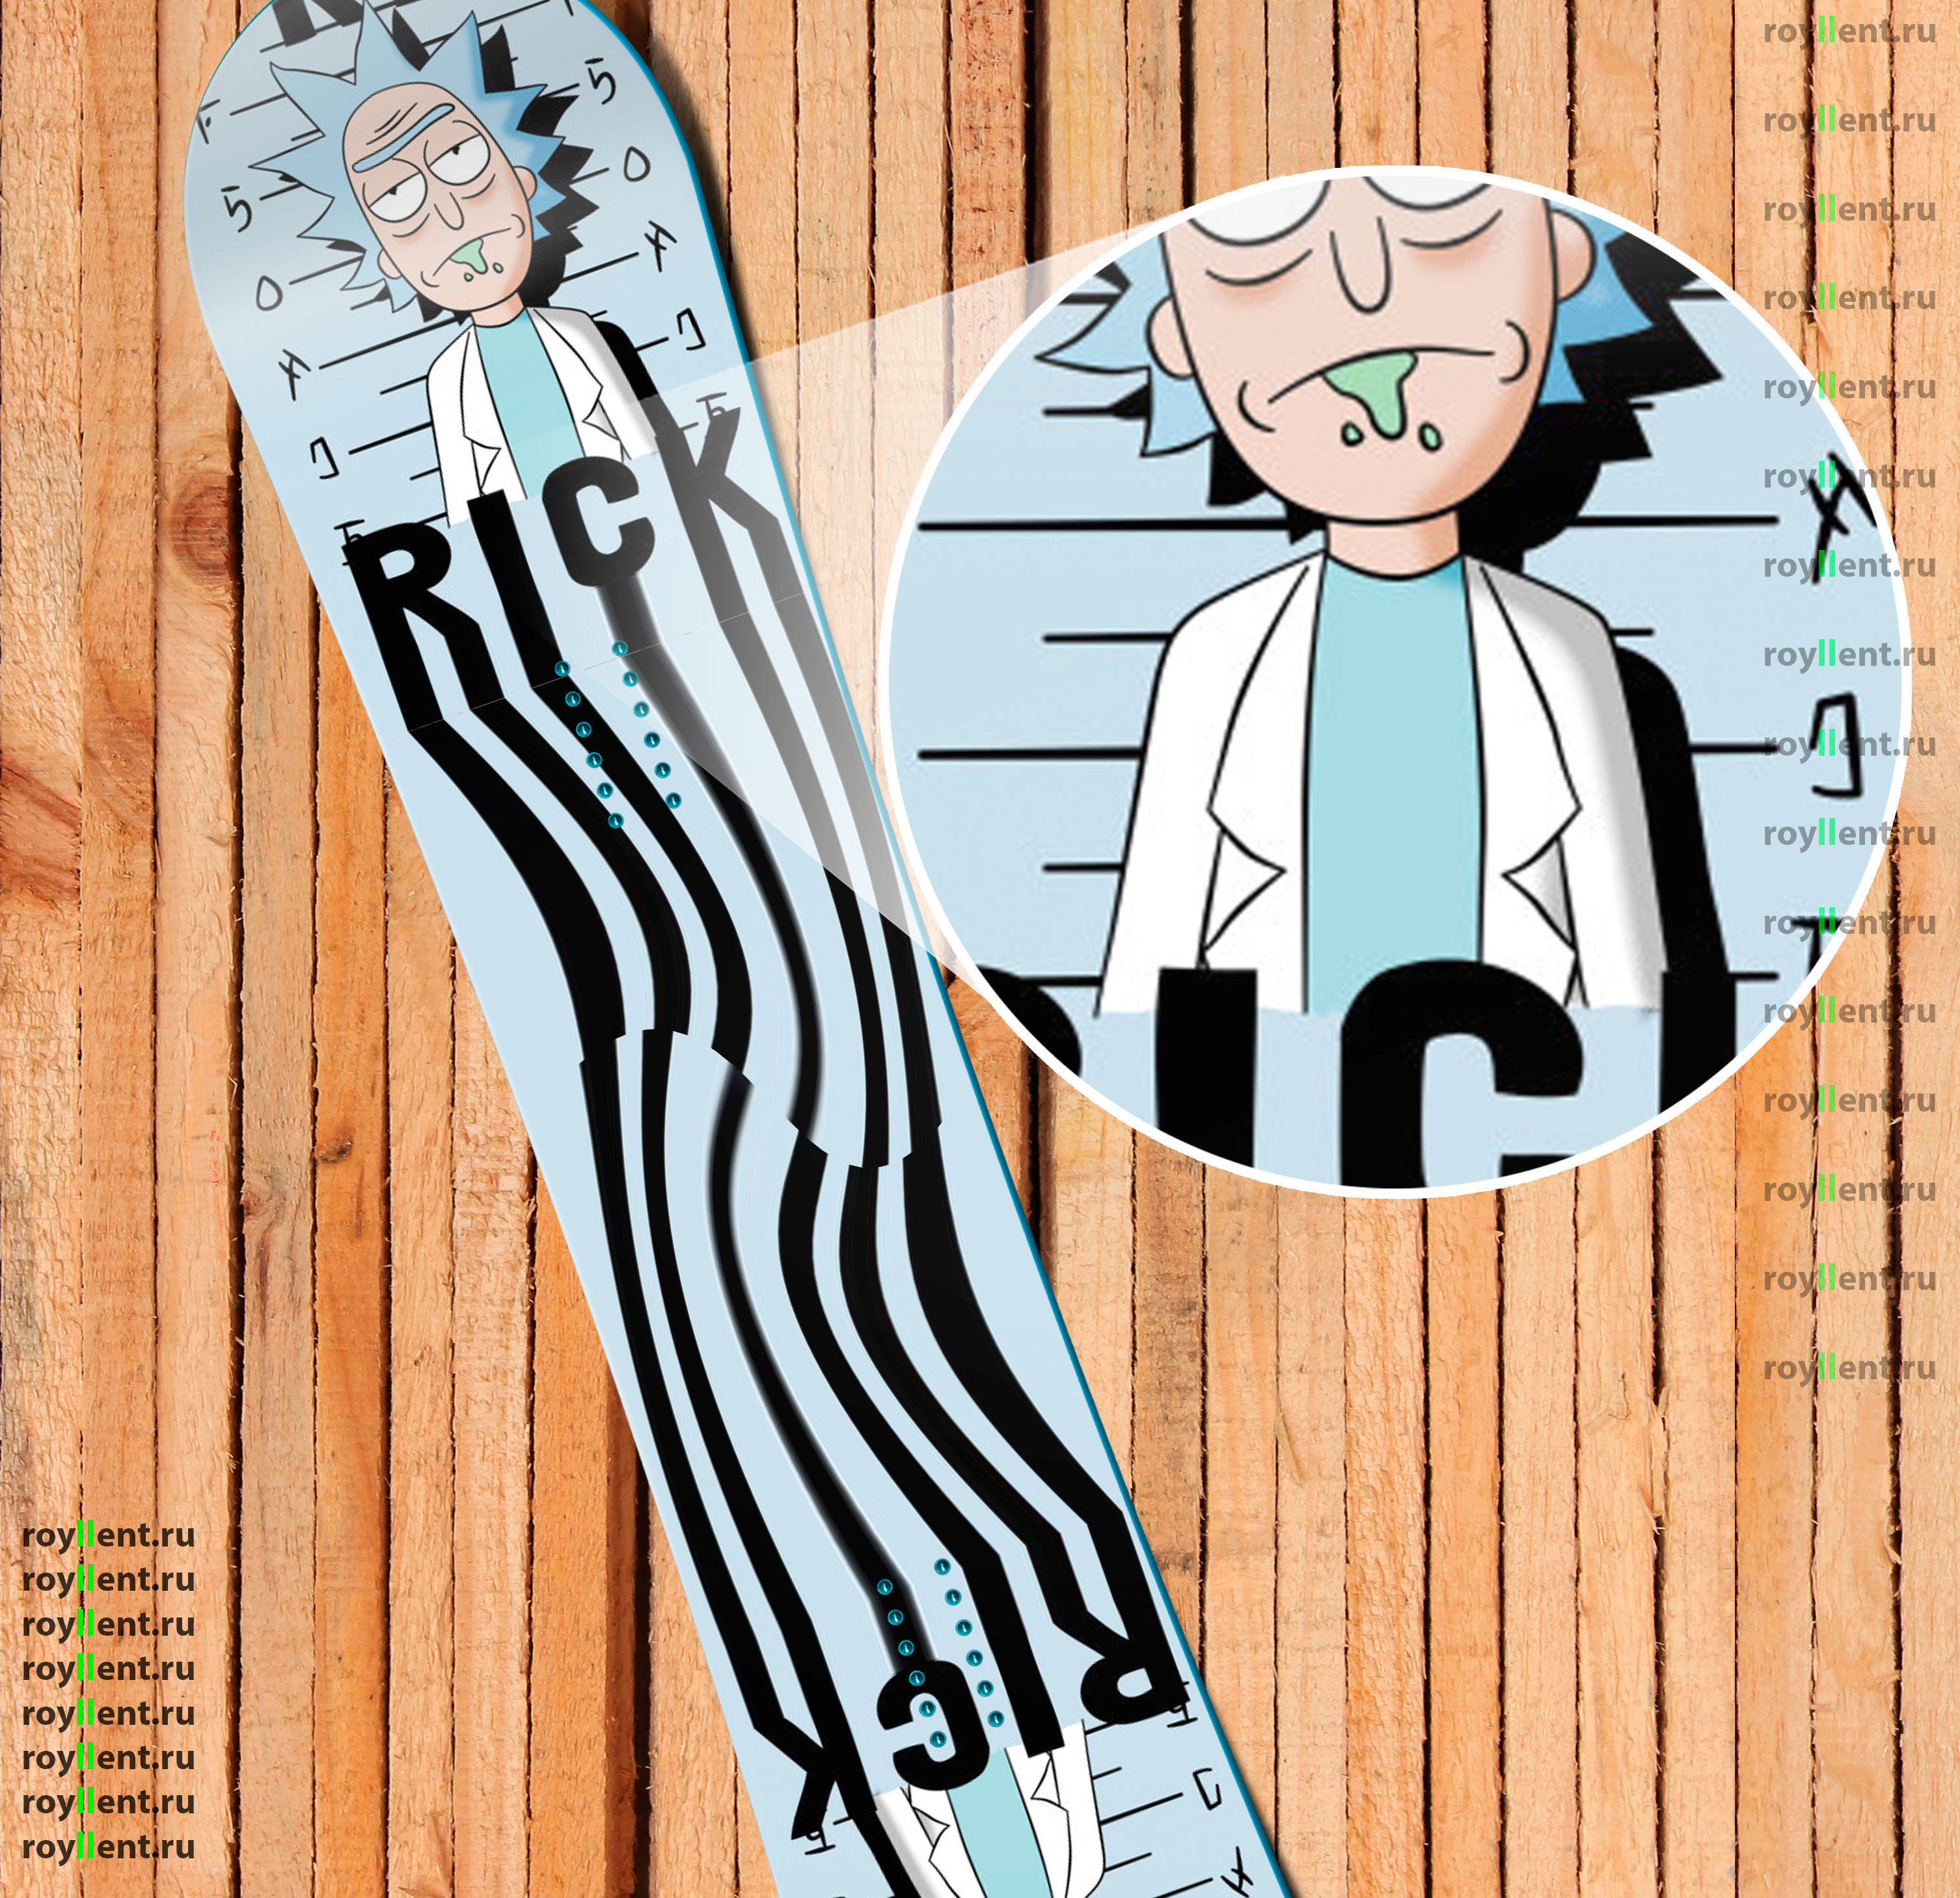 Rick and Morty Police Дизайн наклейки на сноуборд купить в интернет магазине недорого